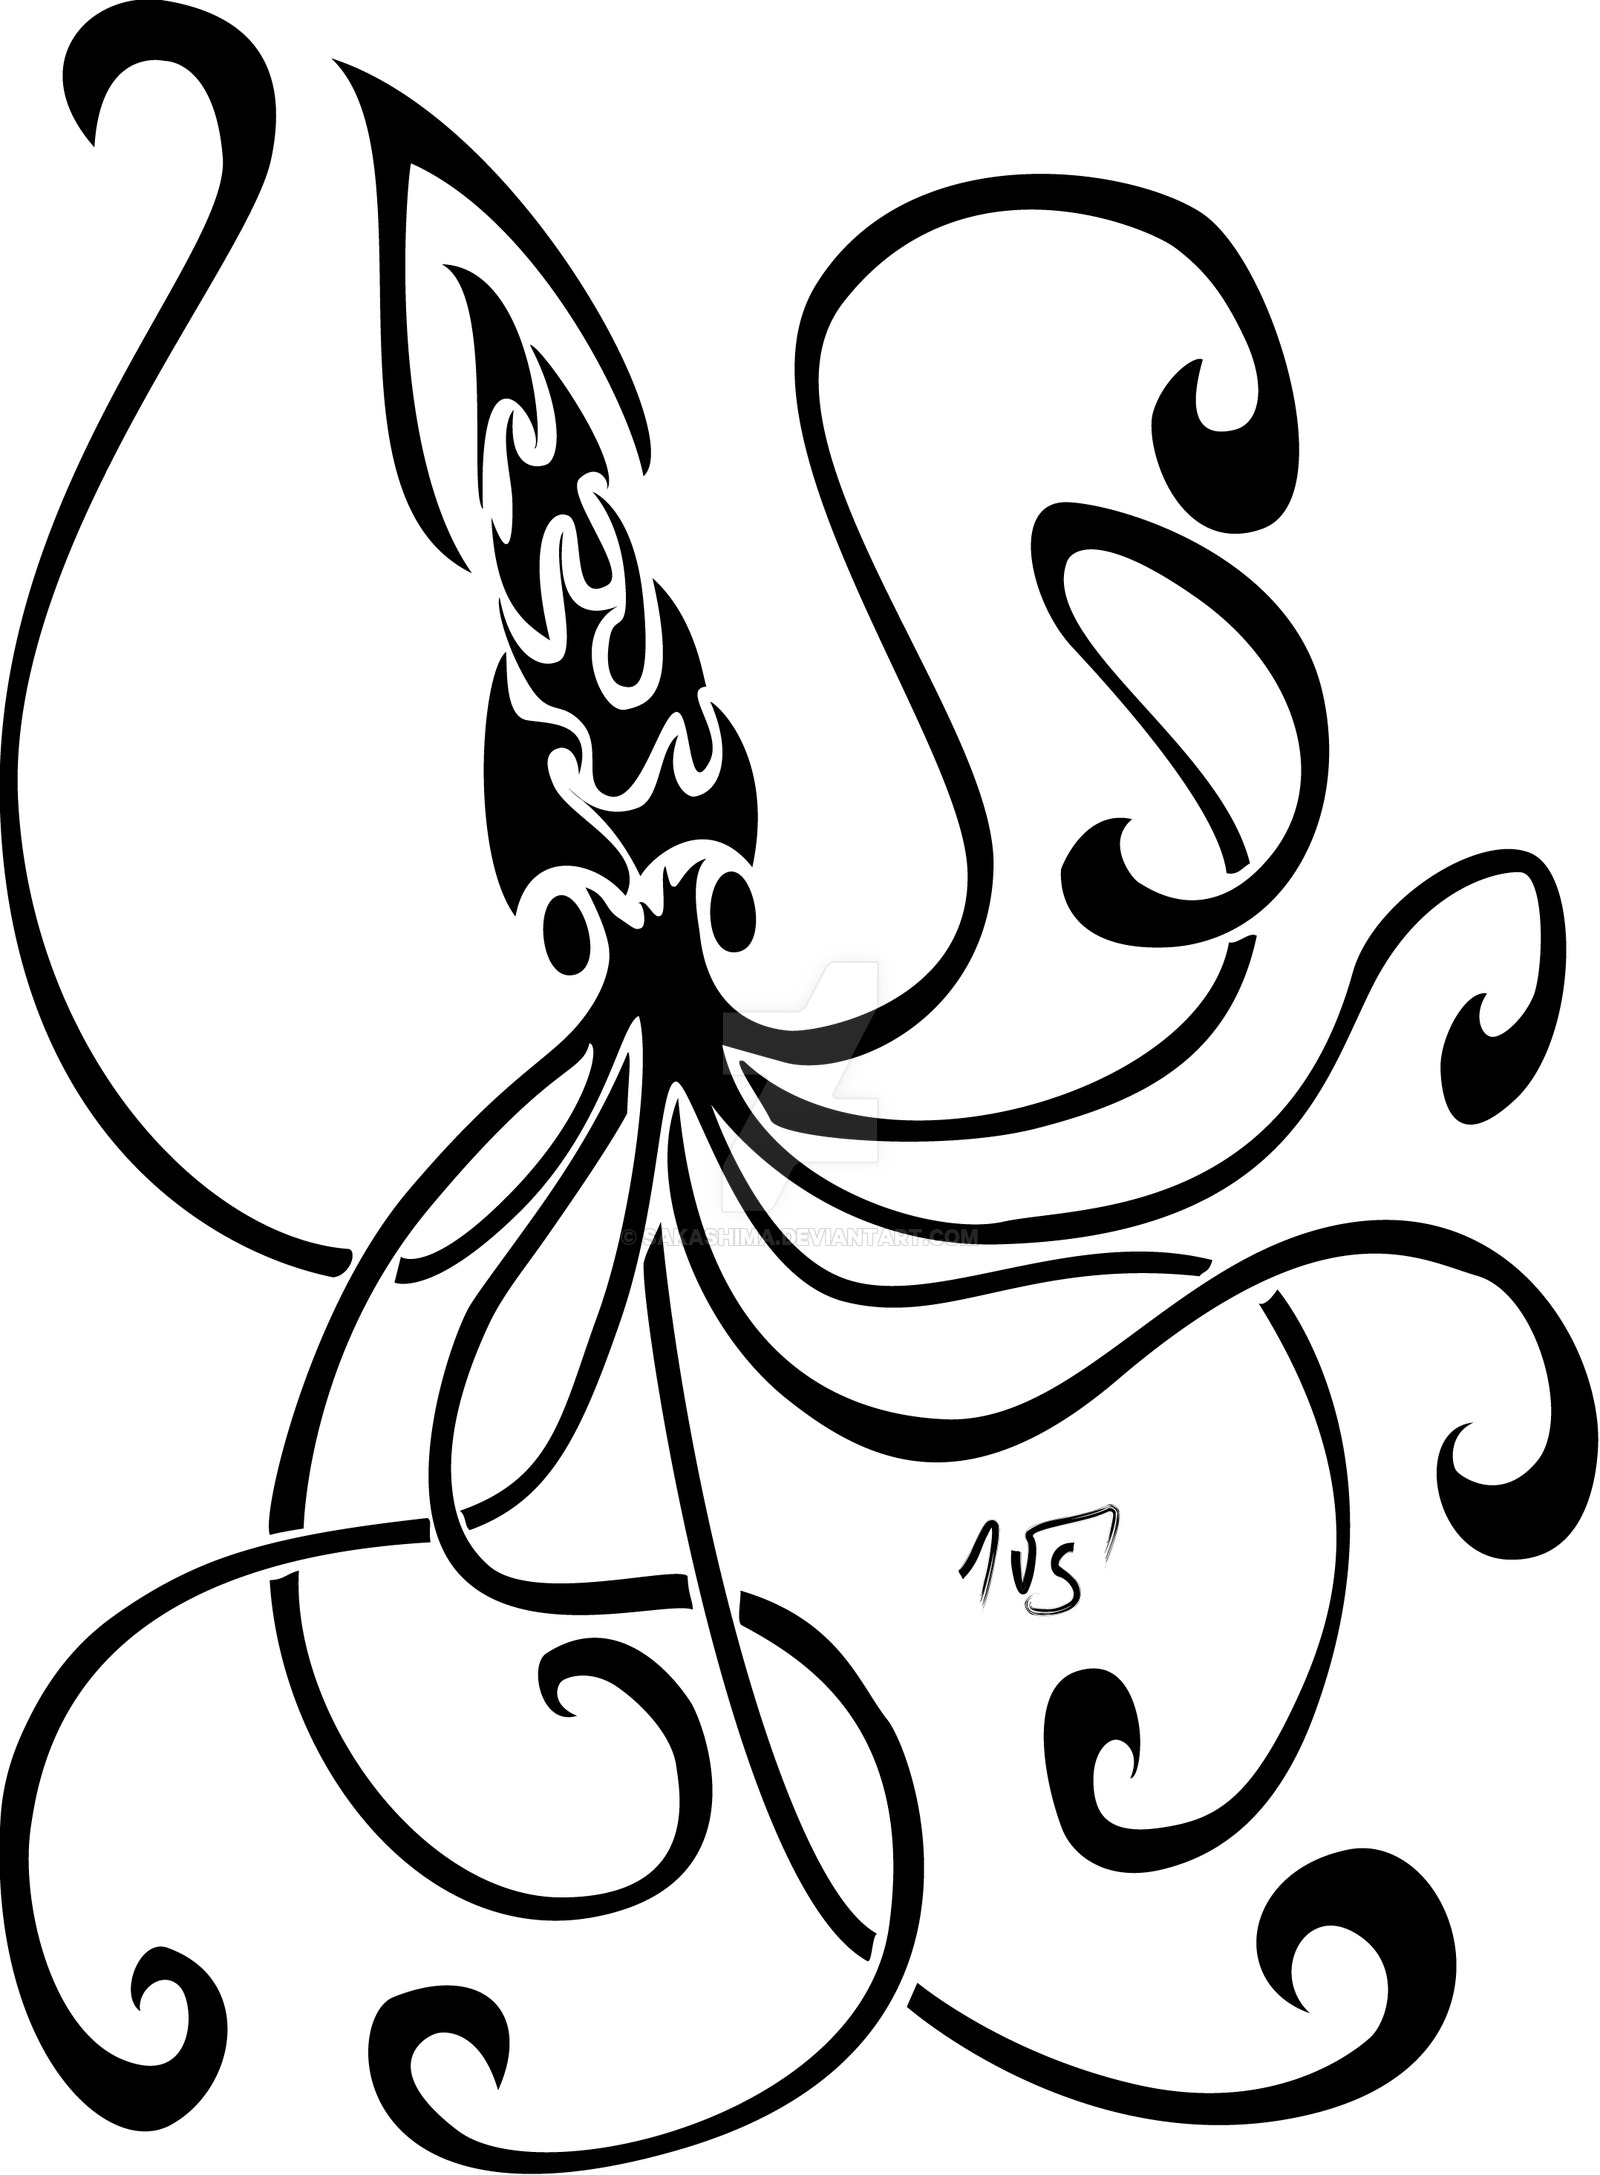 90 Clip Art Of Squid Tattoo Designs Illustrations RoyaltyFree Vector  Graphics  Clip Art  iStock